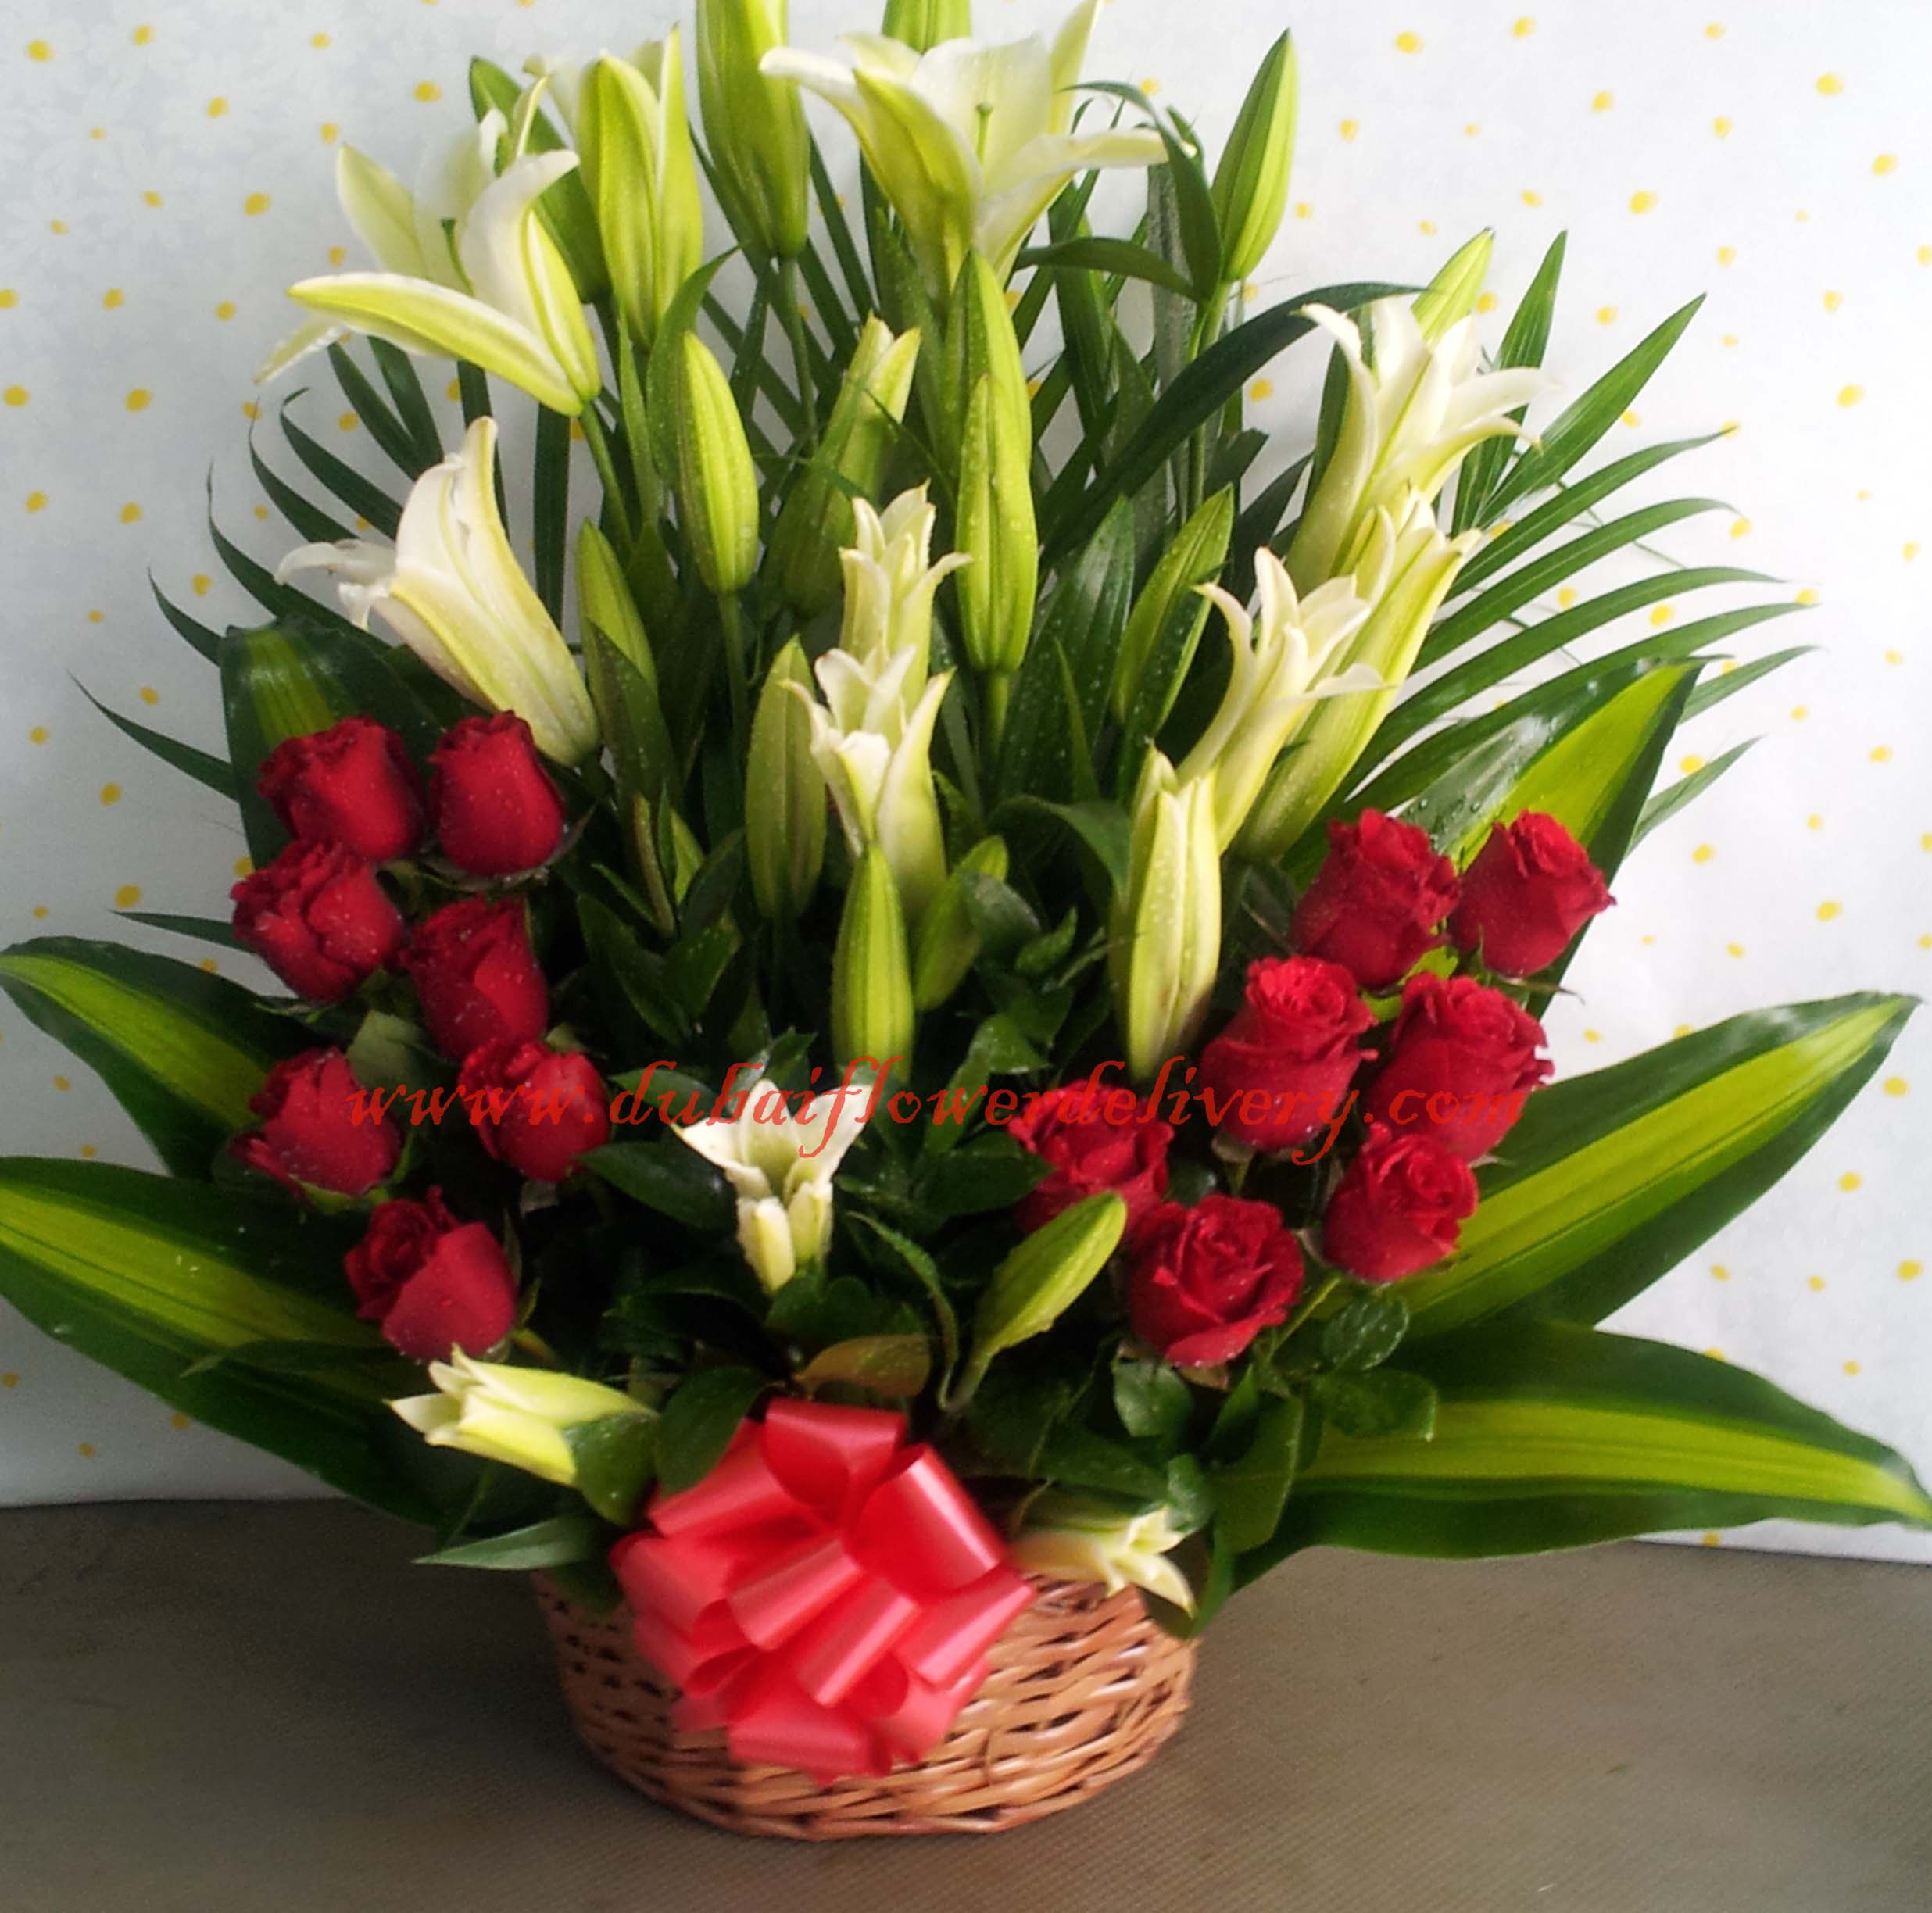 lilies-red-roses-basket.jpg